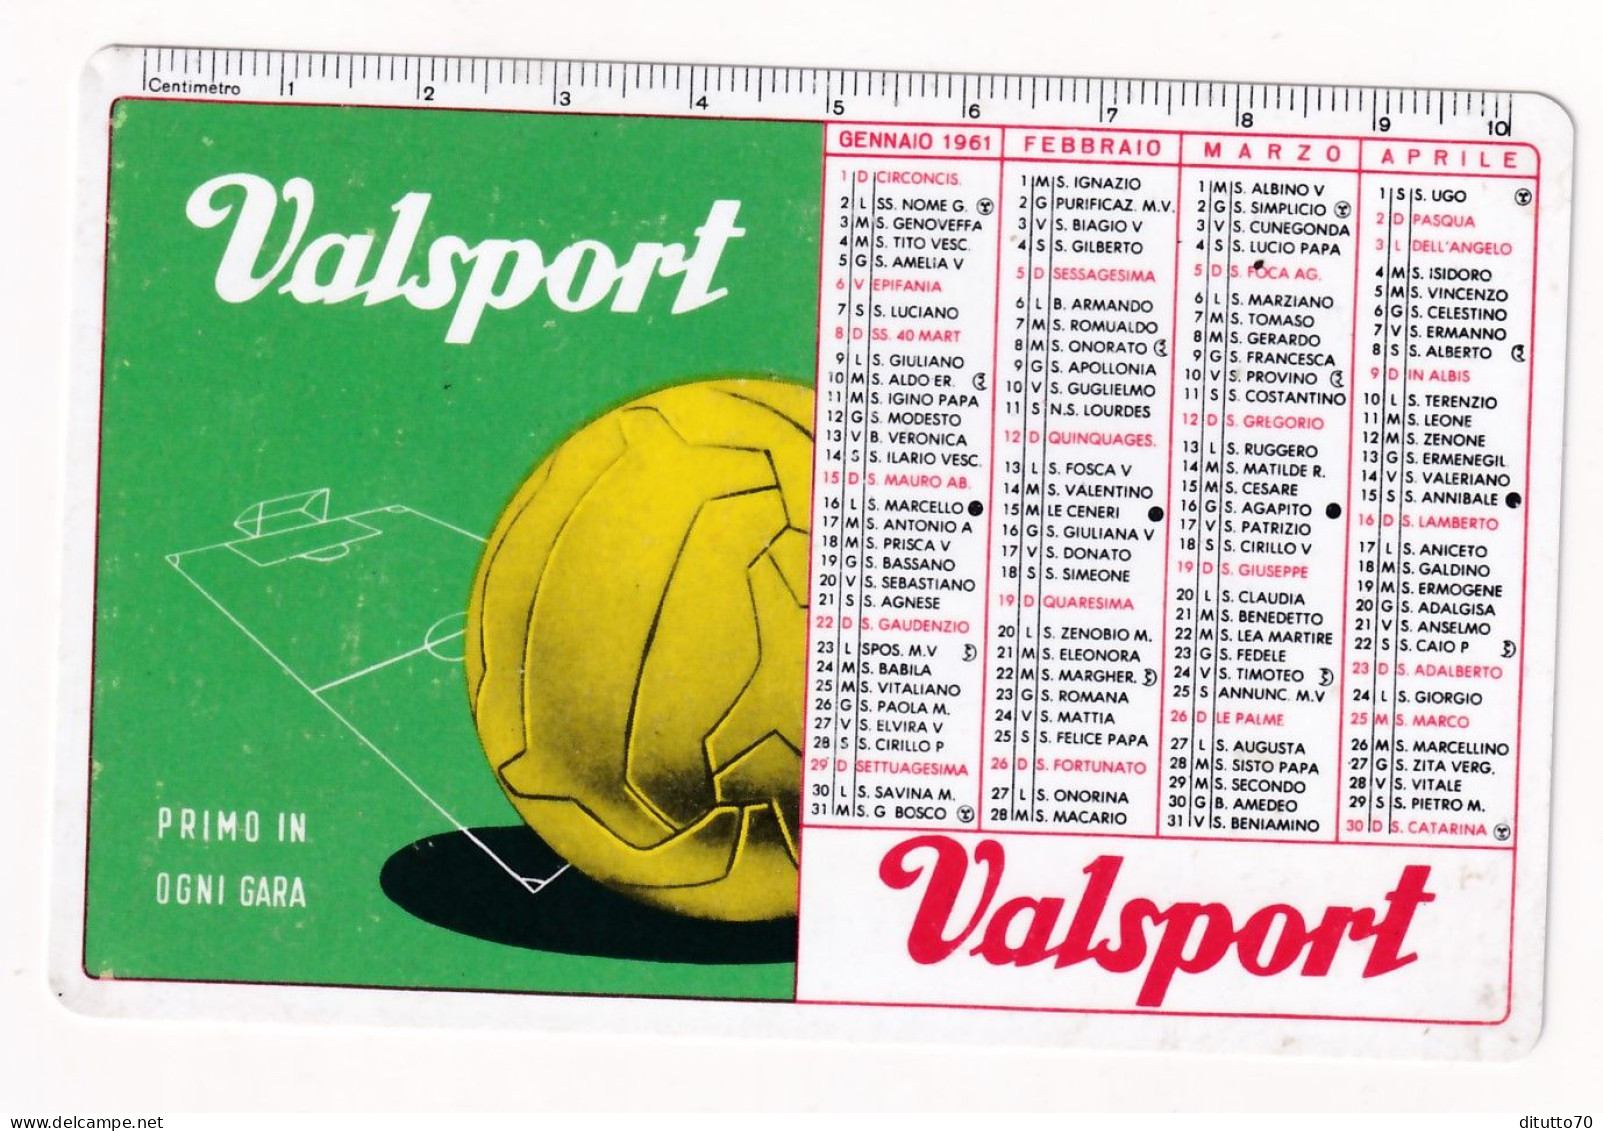 Calendarietto - Valsport - Palloni E Calzature - Anno 1961 - Small : 1961-70